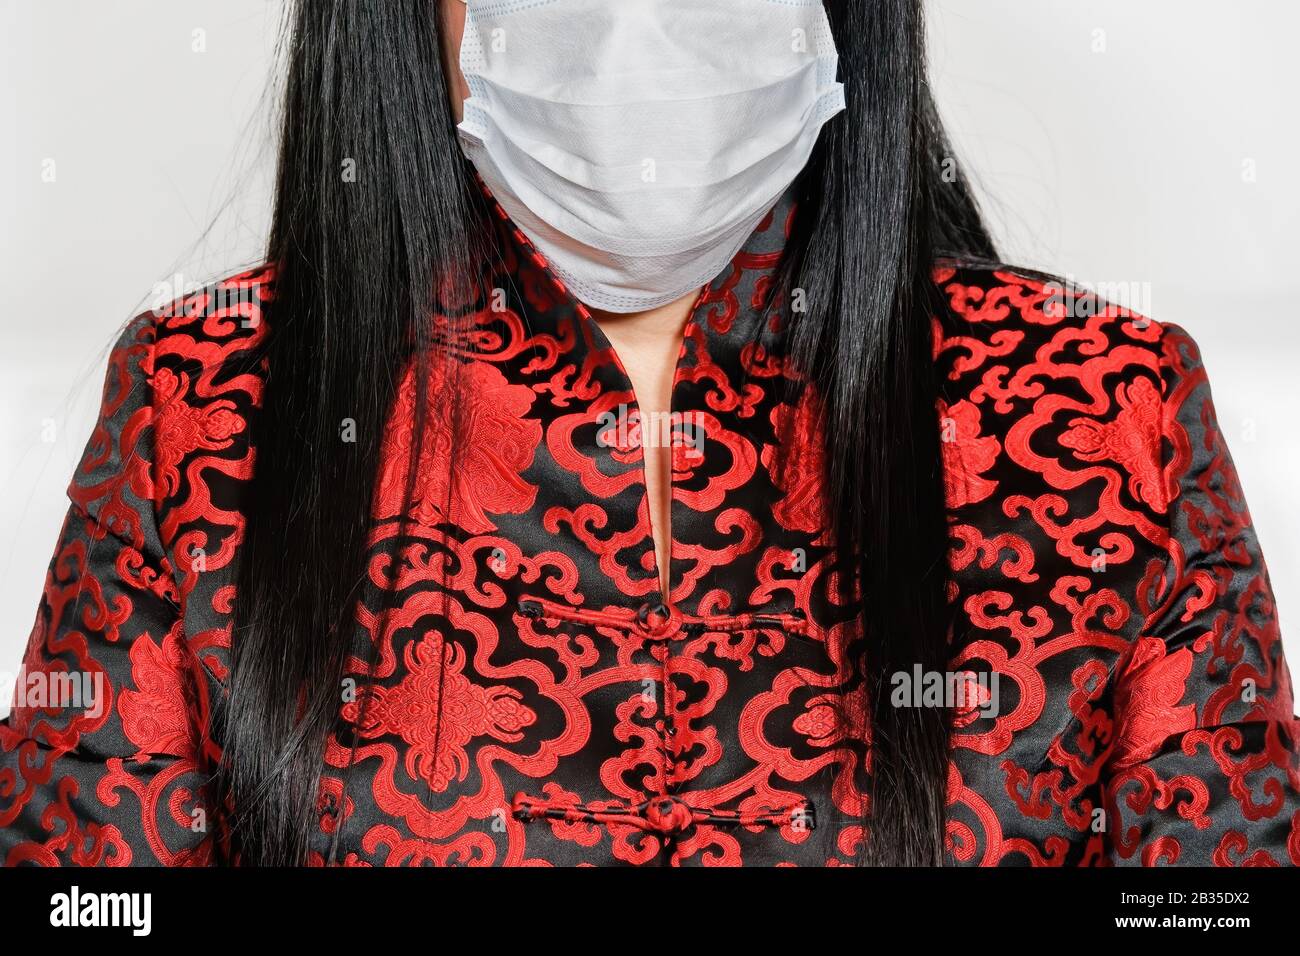 Coronavirus COVID-19 World Outbreak Concept con donna, vestita con abiti asiatici, indossando maschera facciale per proteggere dalle malattie respiratorie e del 2019-nCoV. Foto Stock